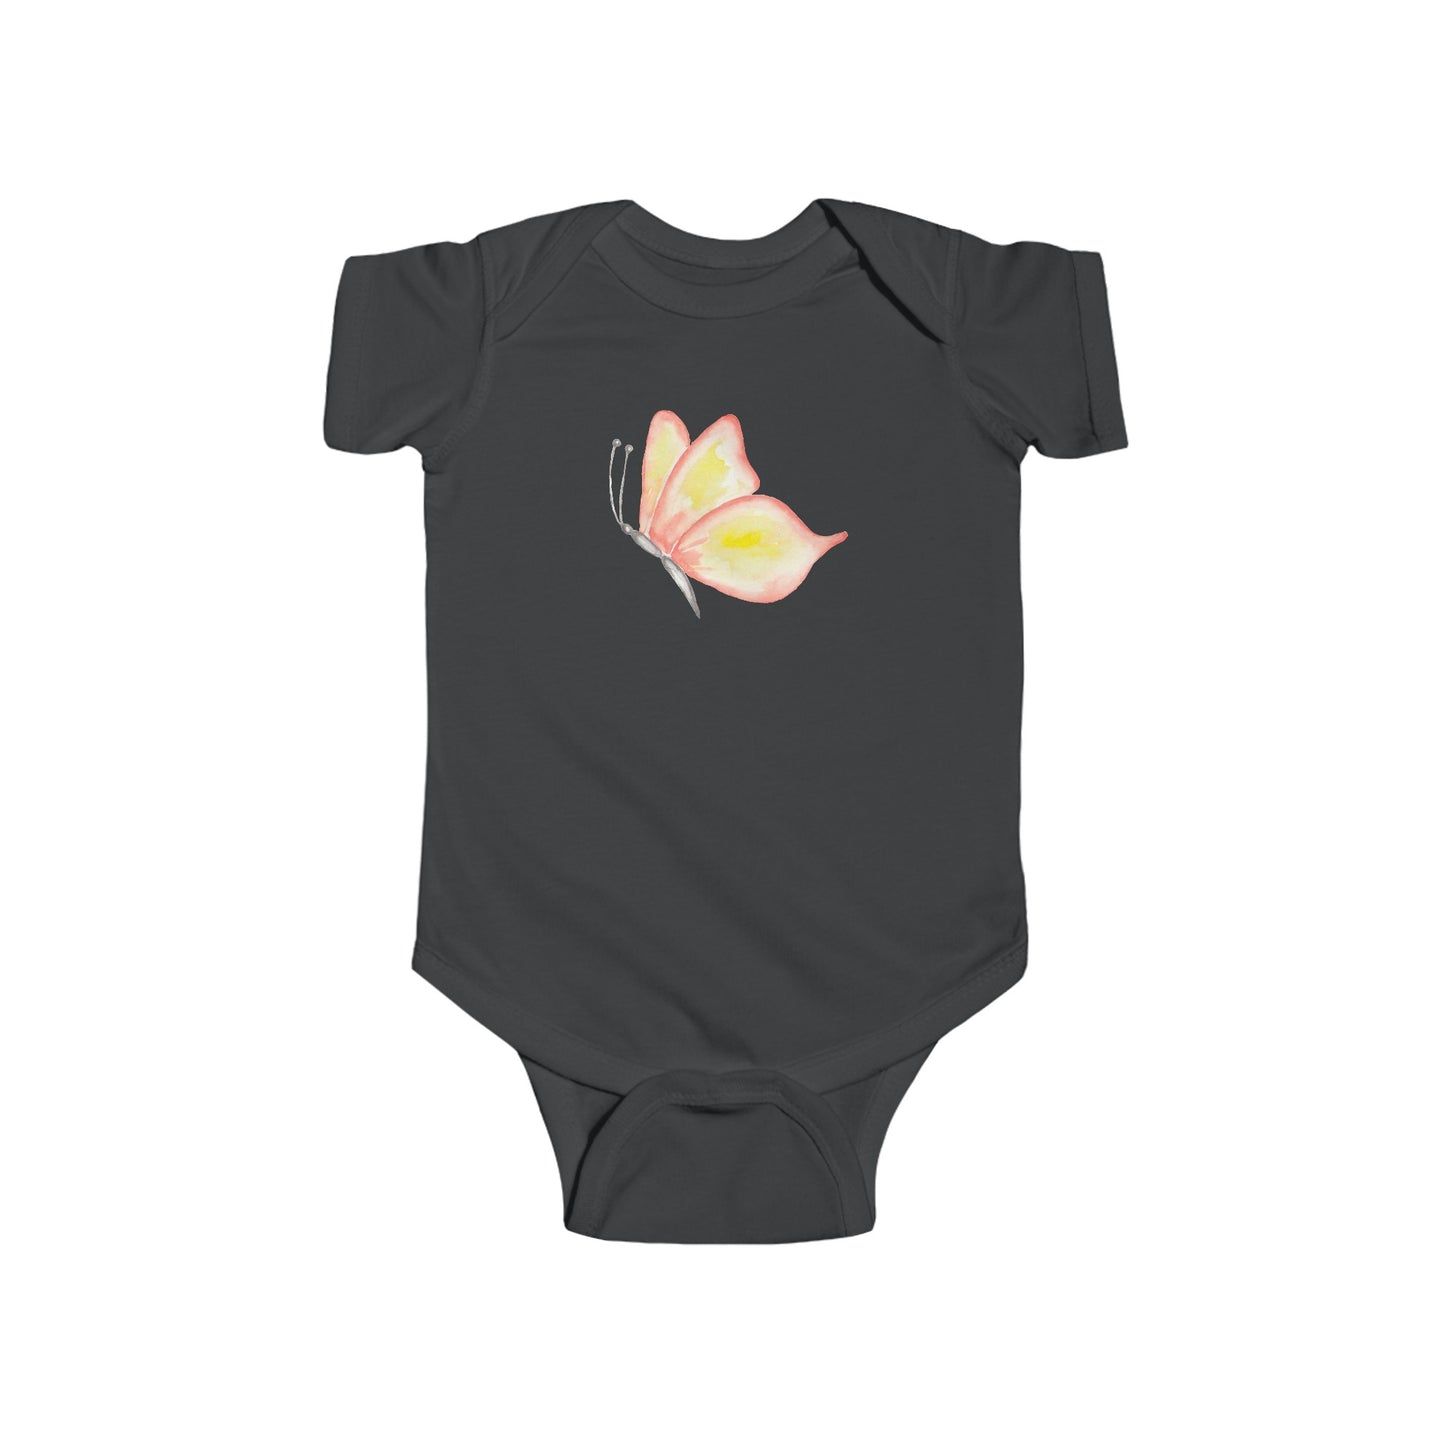 Watercolor Butterfly - Infant Fine Jersey Bodysuit